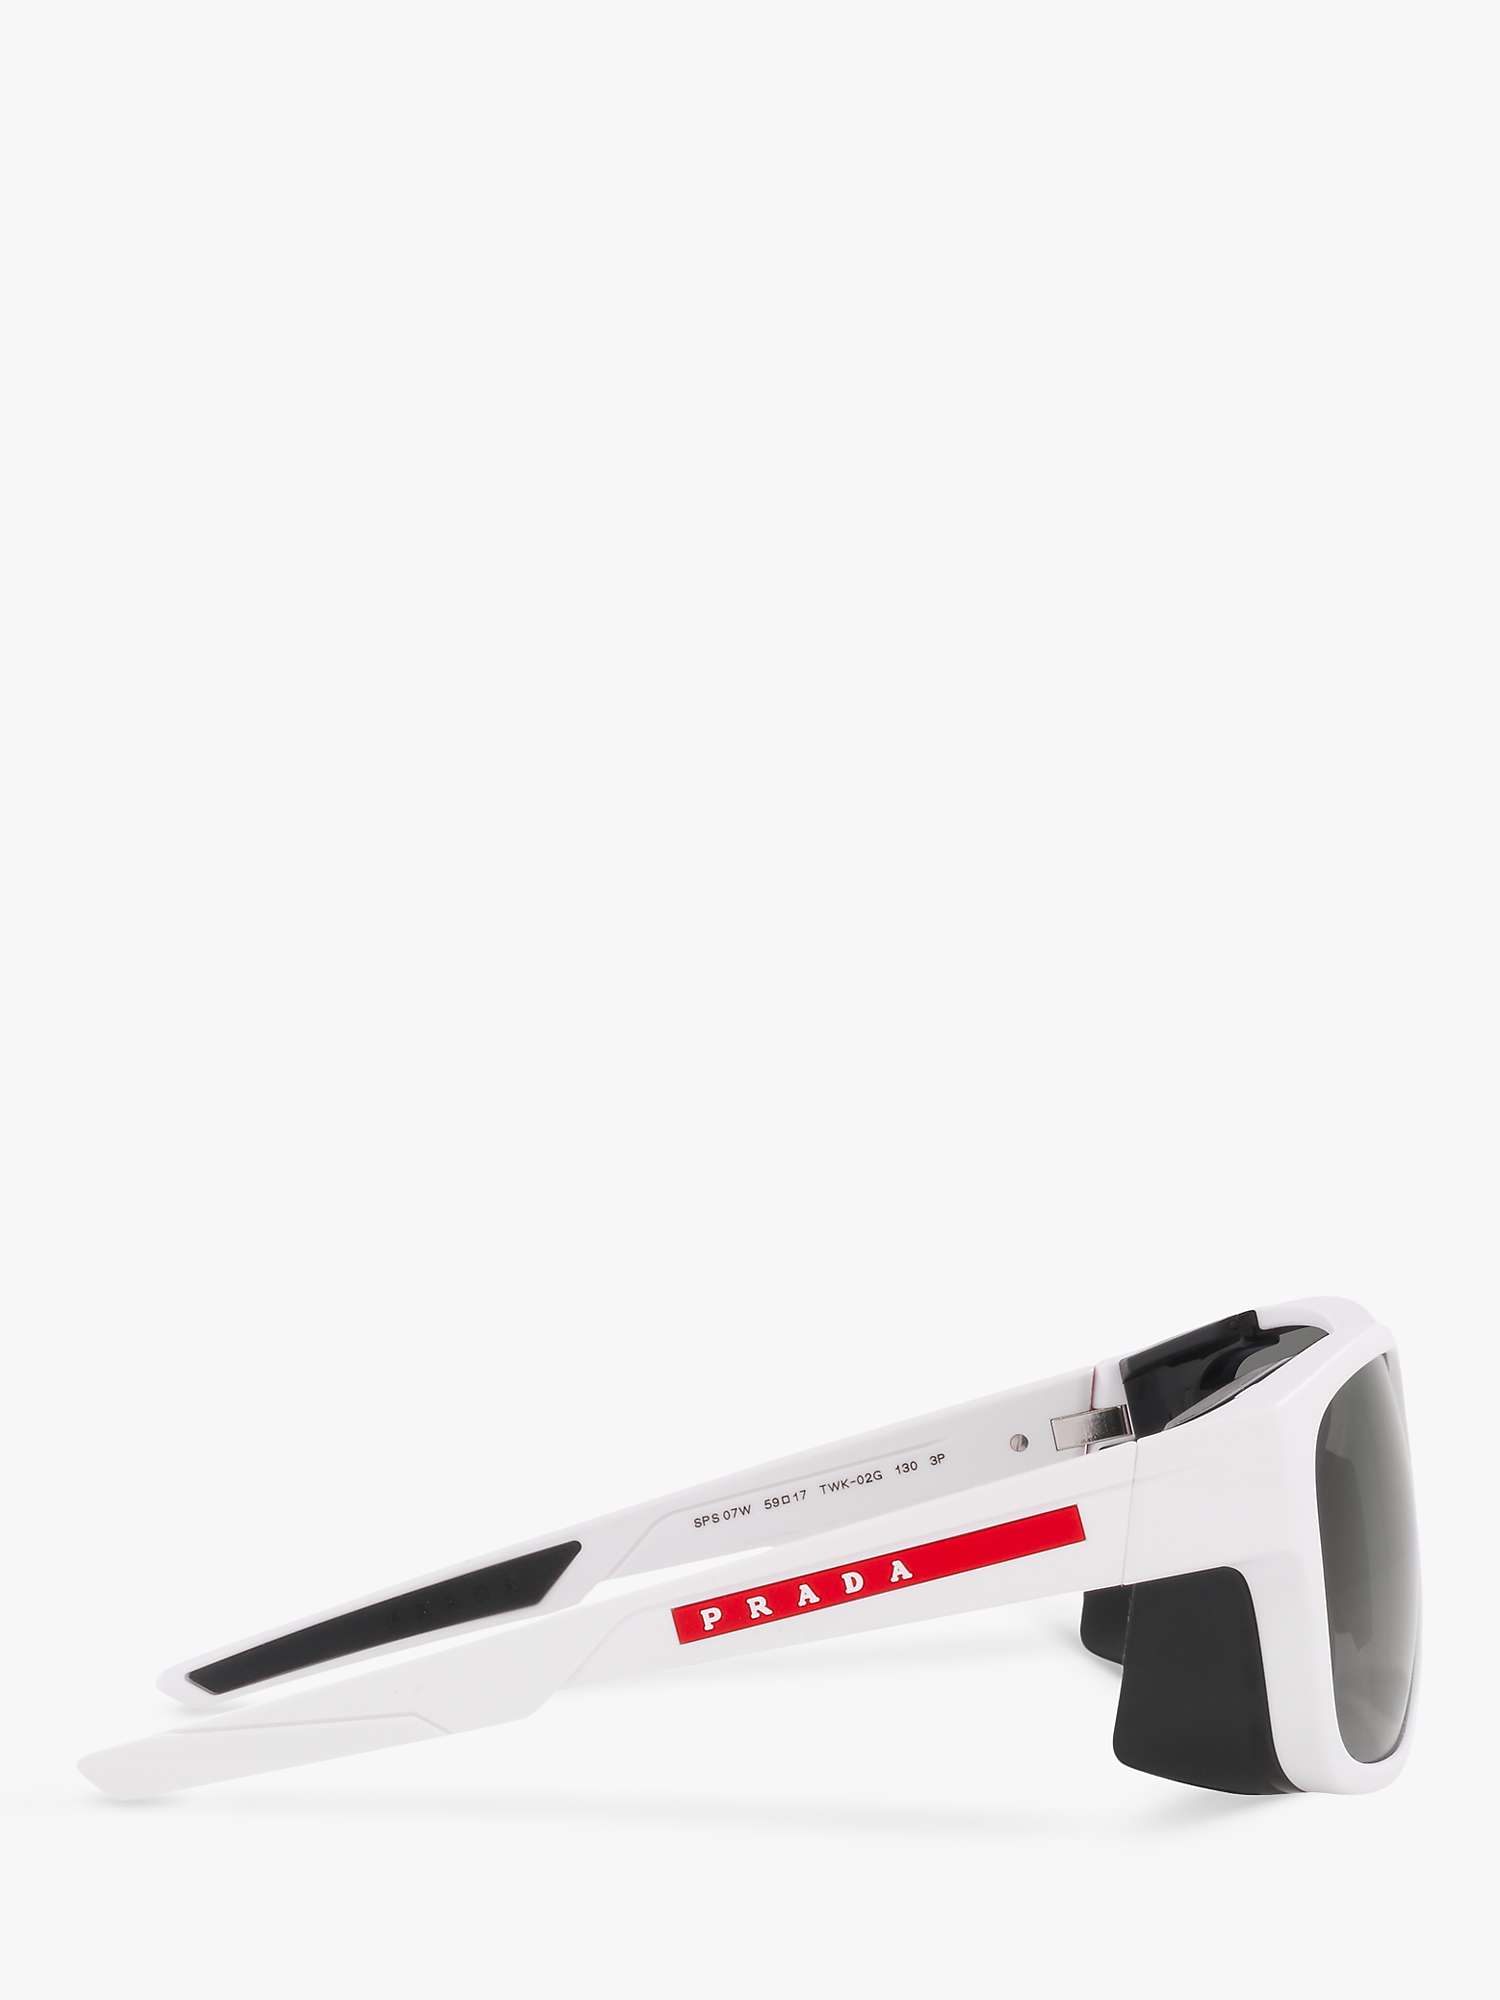 Buy Prada Linea Rossa PS 07WS Men's Polarised Square Sunglasses, White Rubber/Grey Online at johnlewis.com